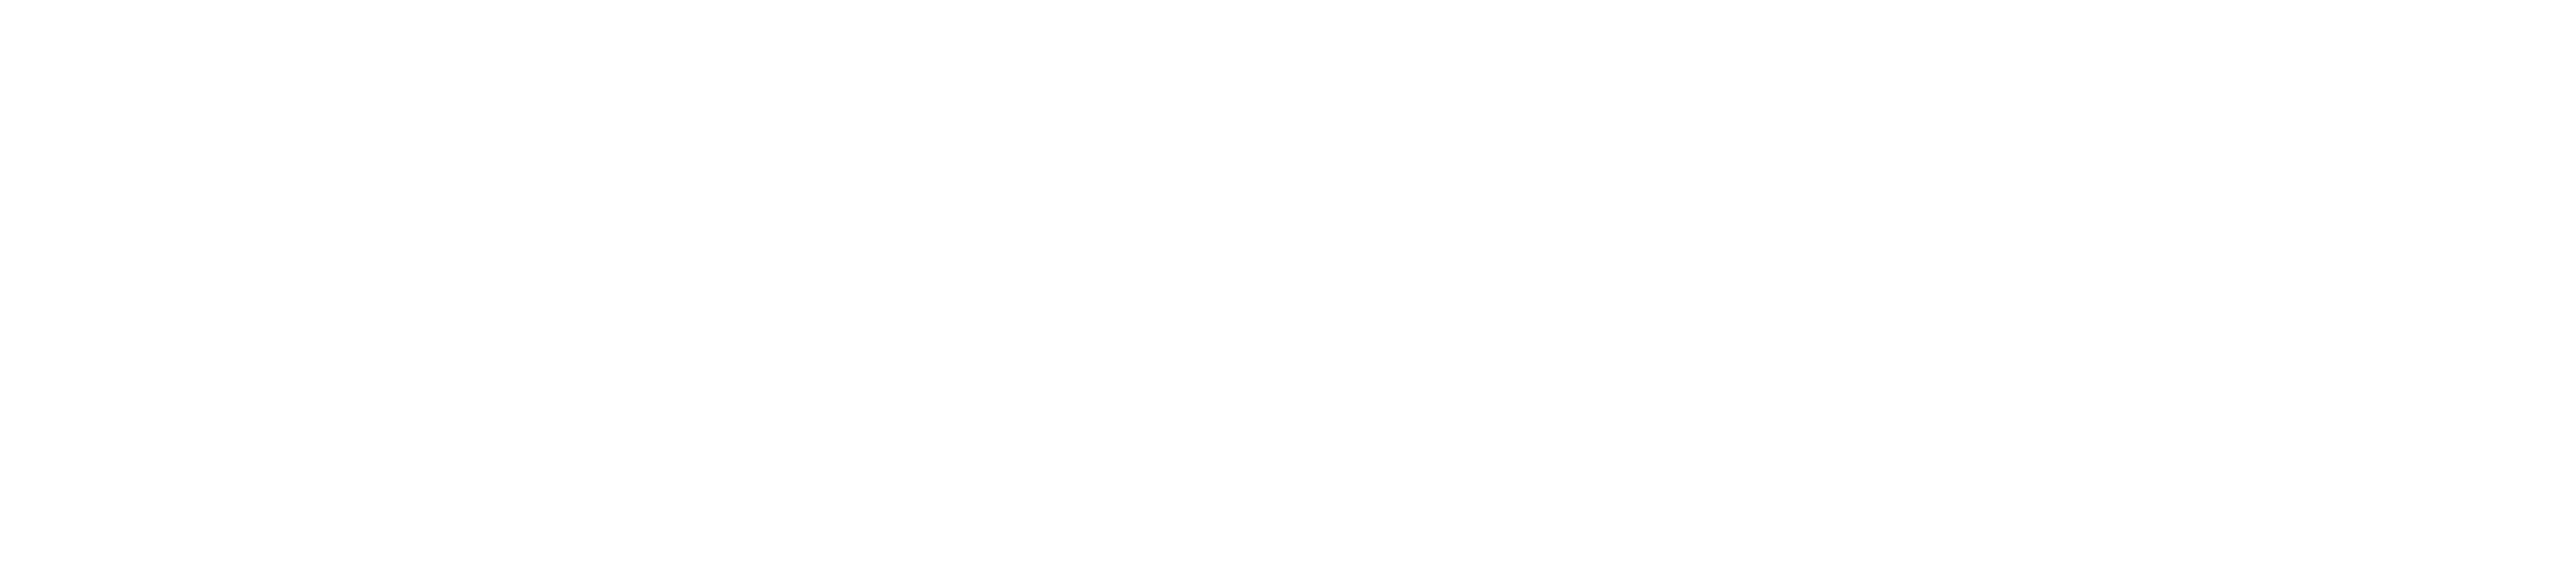 Coder Logo